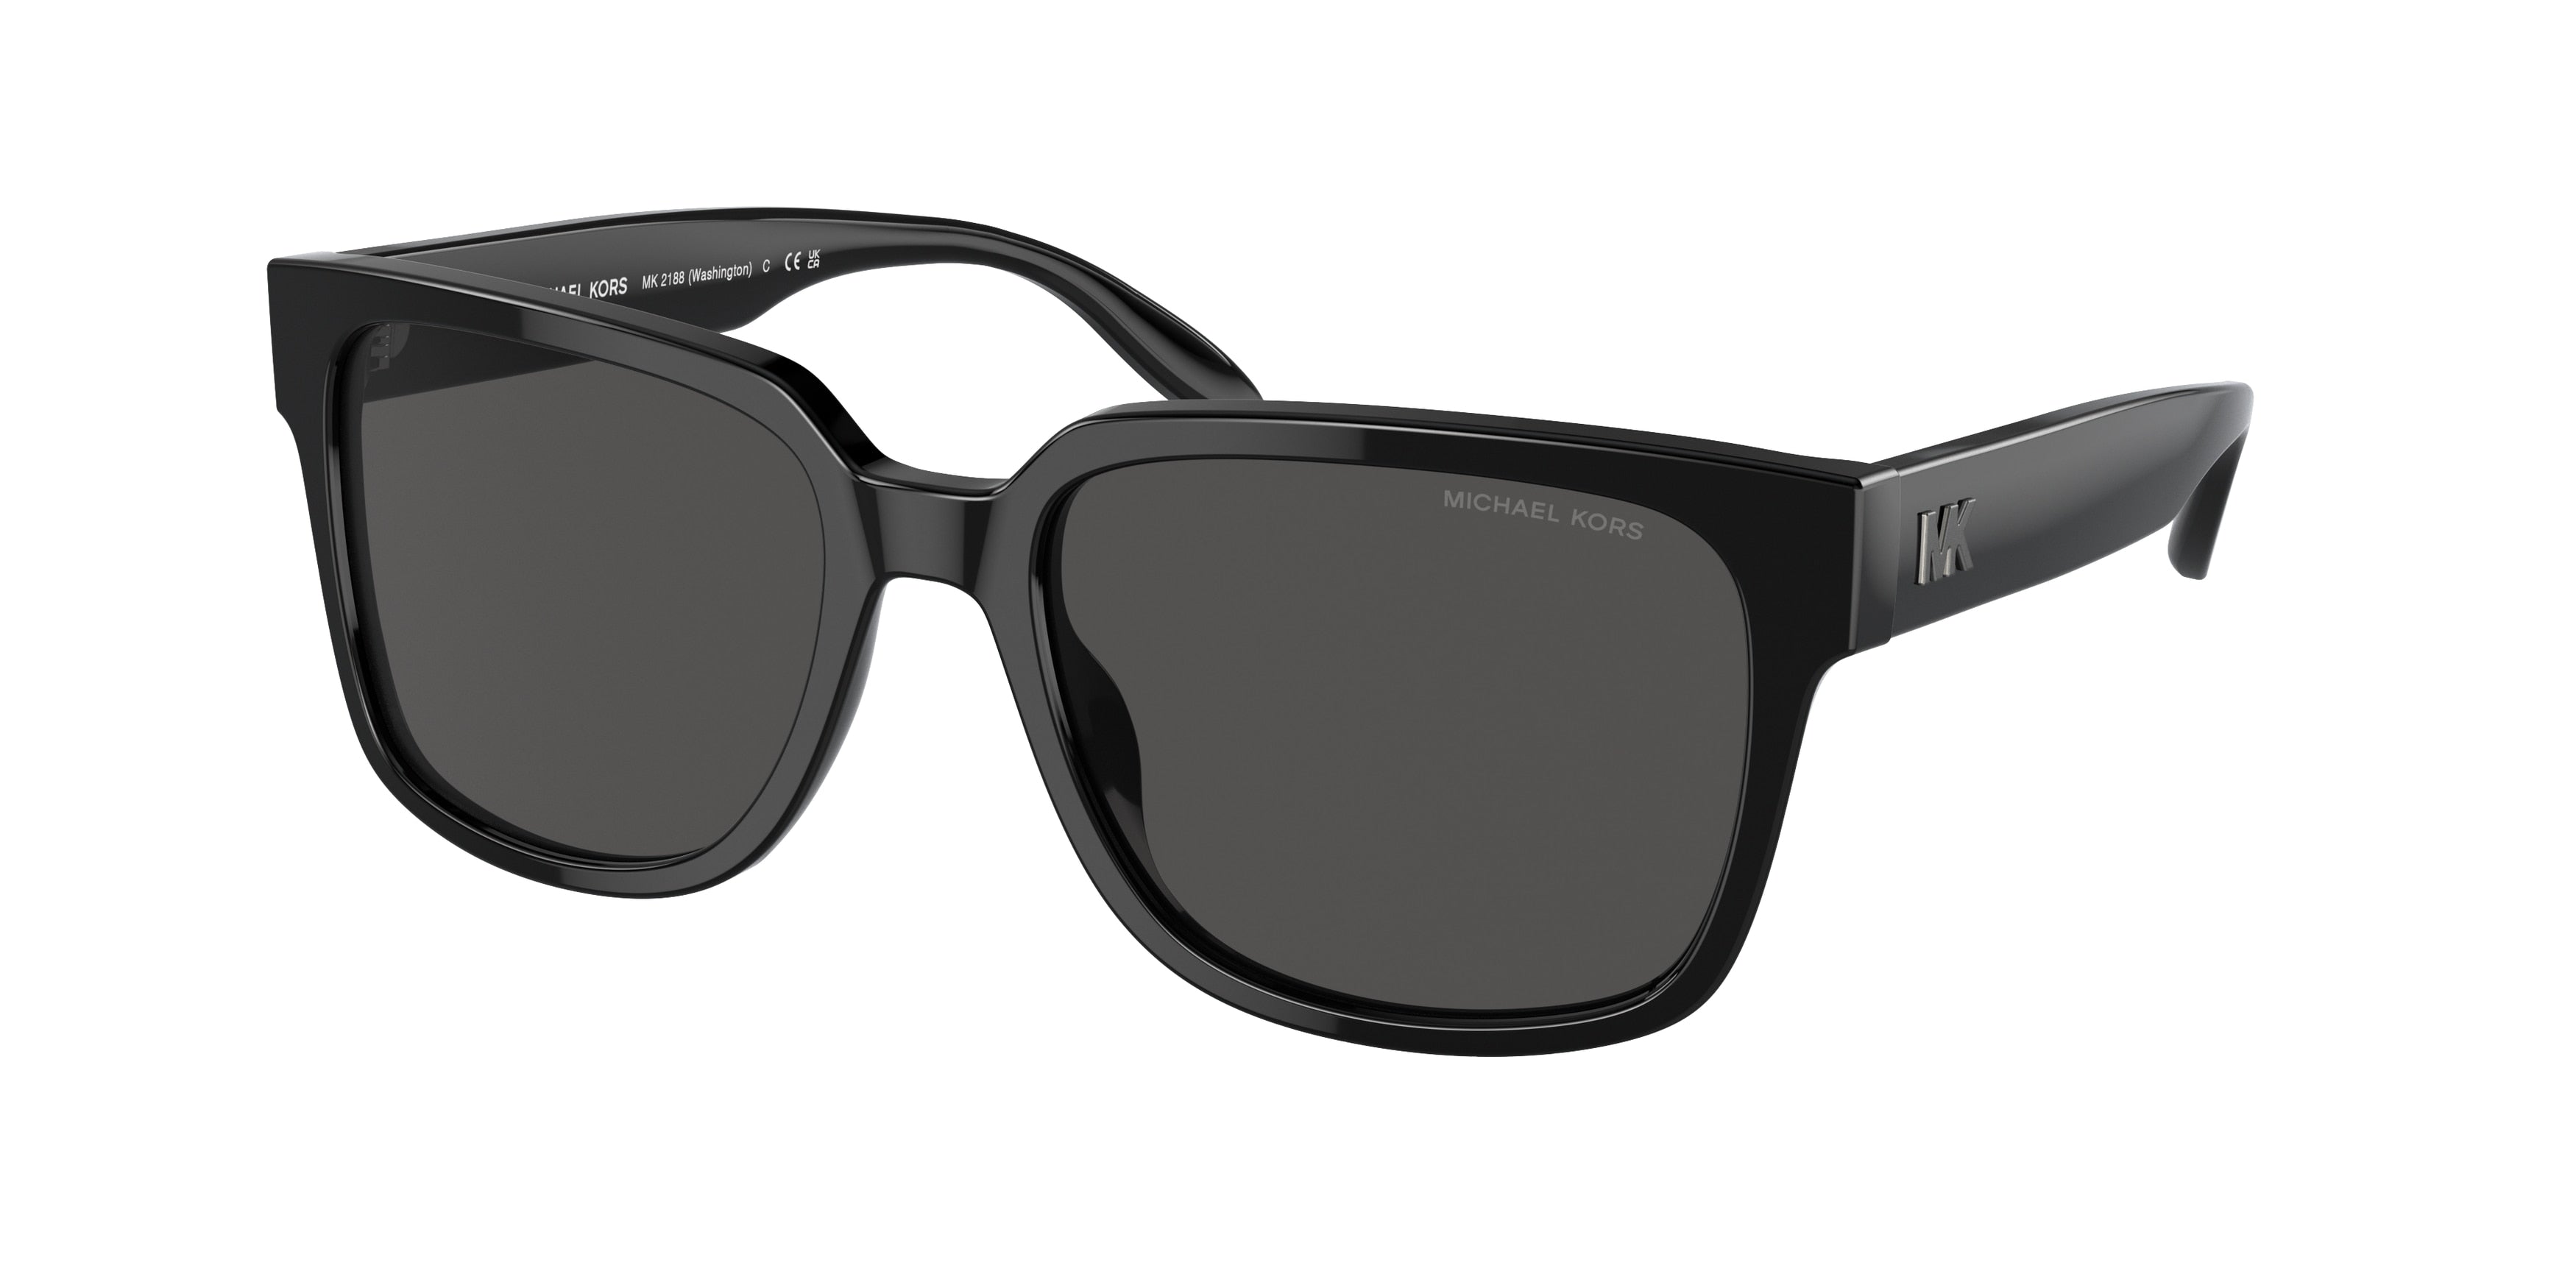 Michael Kors WASHINGTON MK2188 Square Sunglasses  300587-Black 57-145-18 - Color Map Black